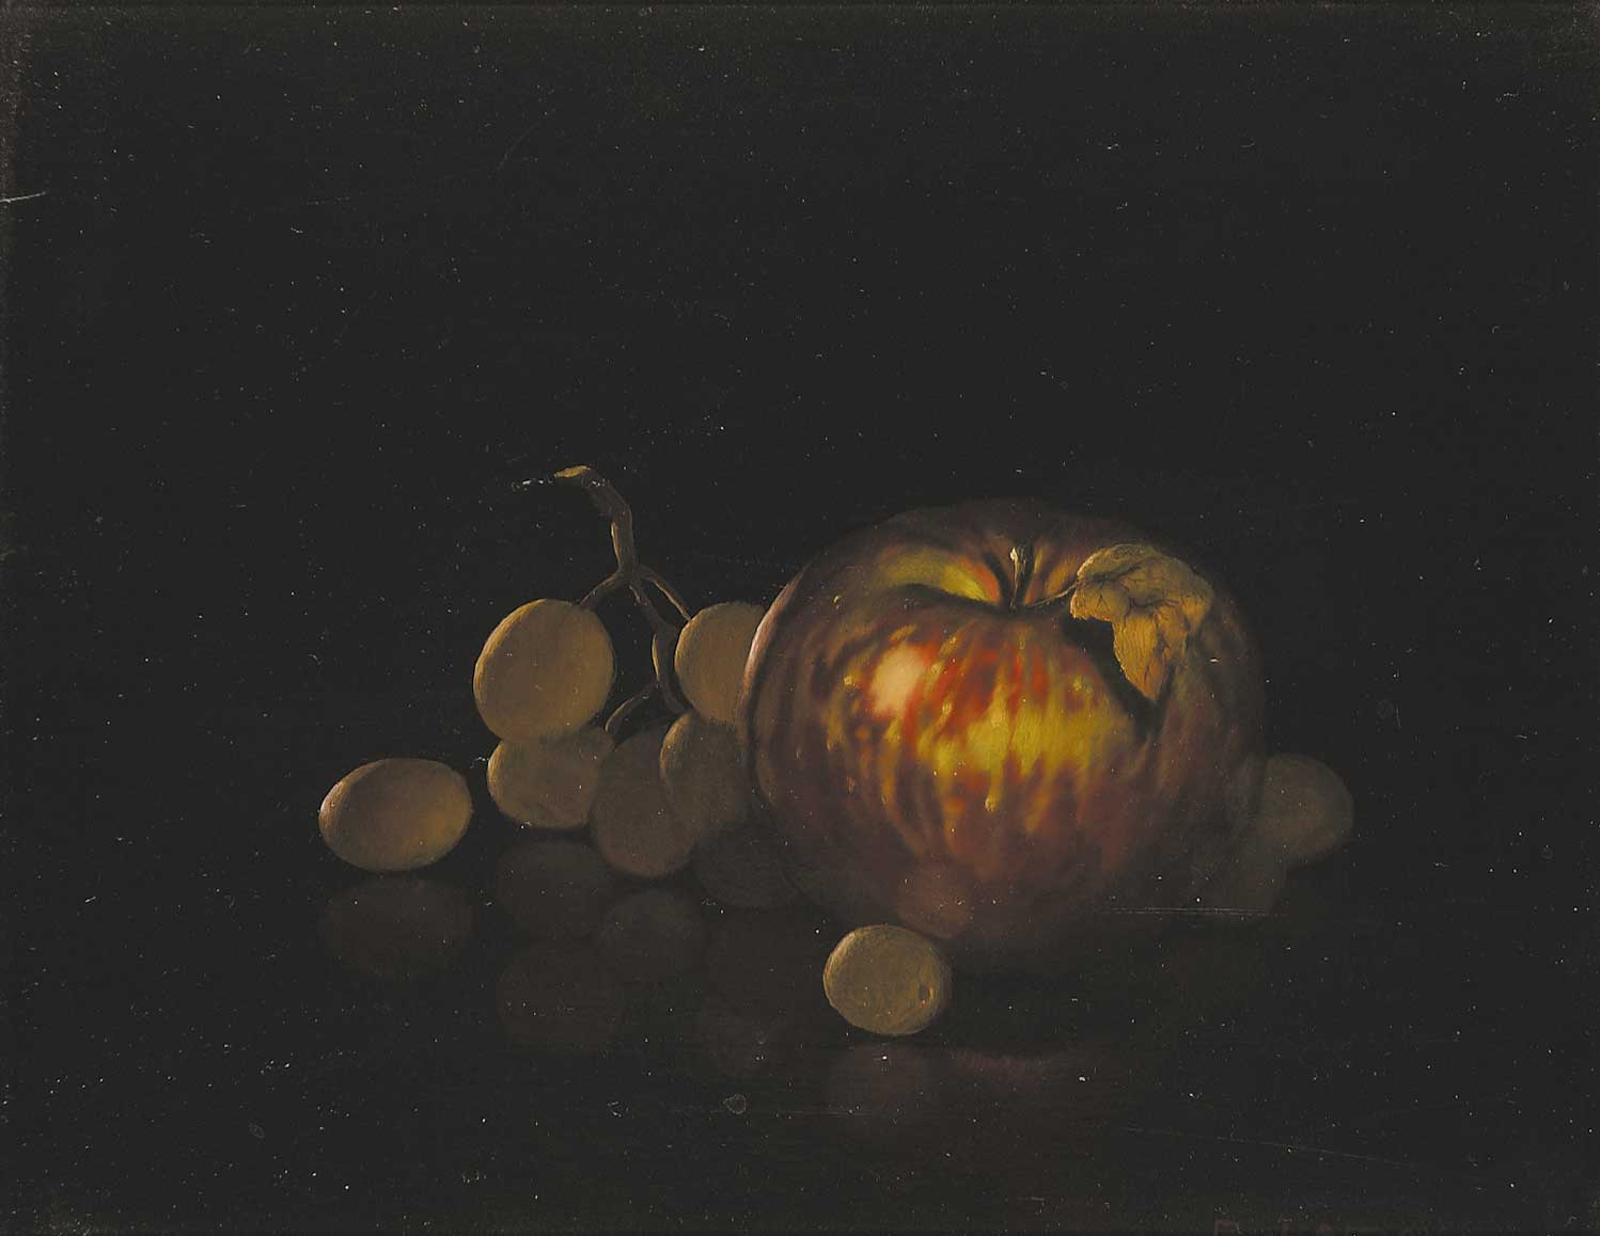 P. Lamay - Untitled - Autumn Fruit